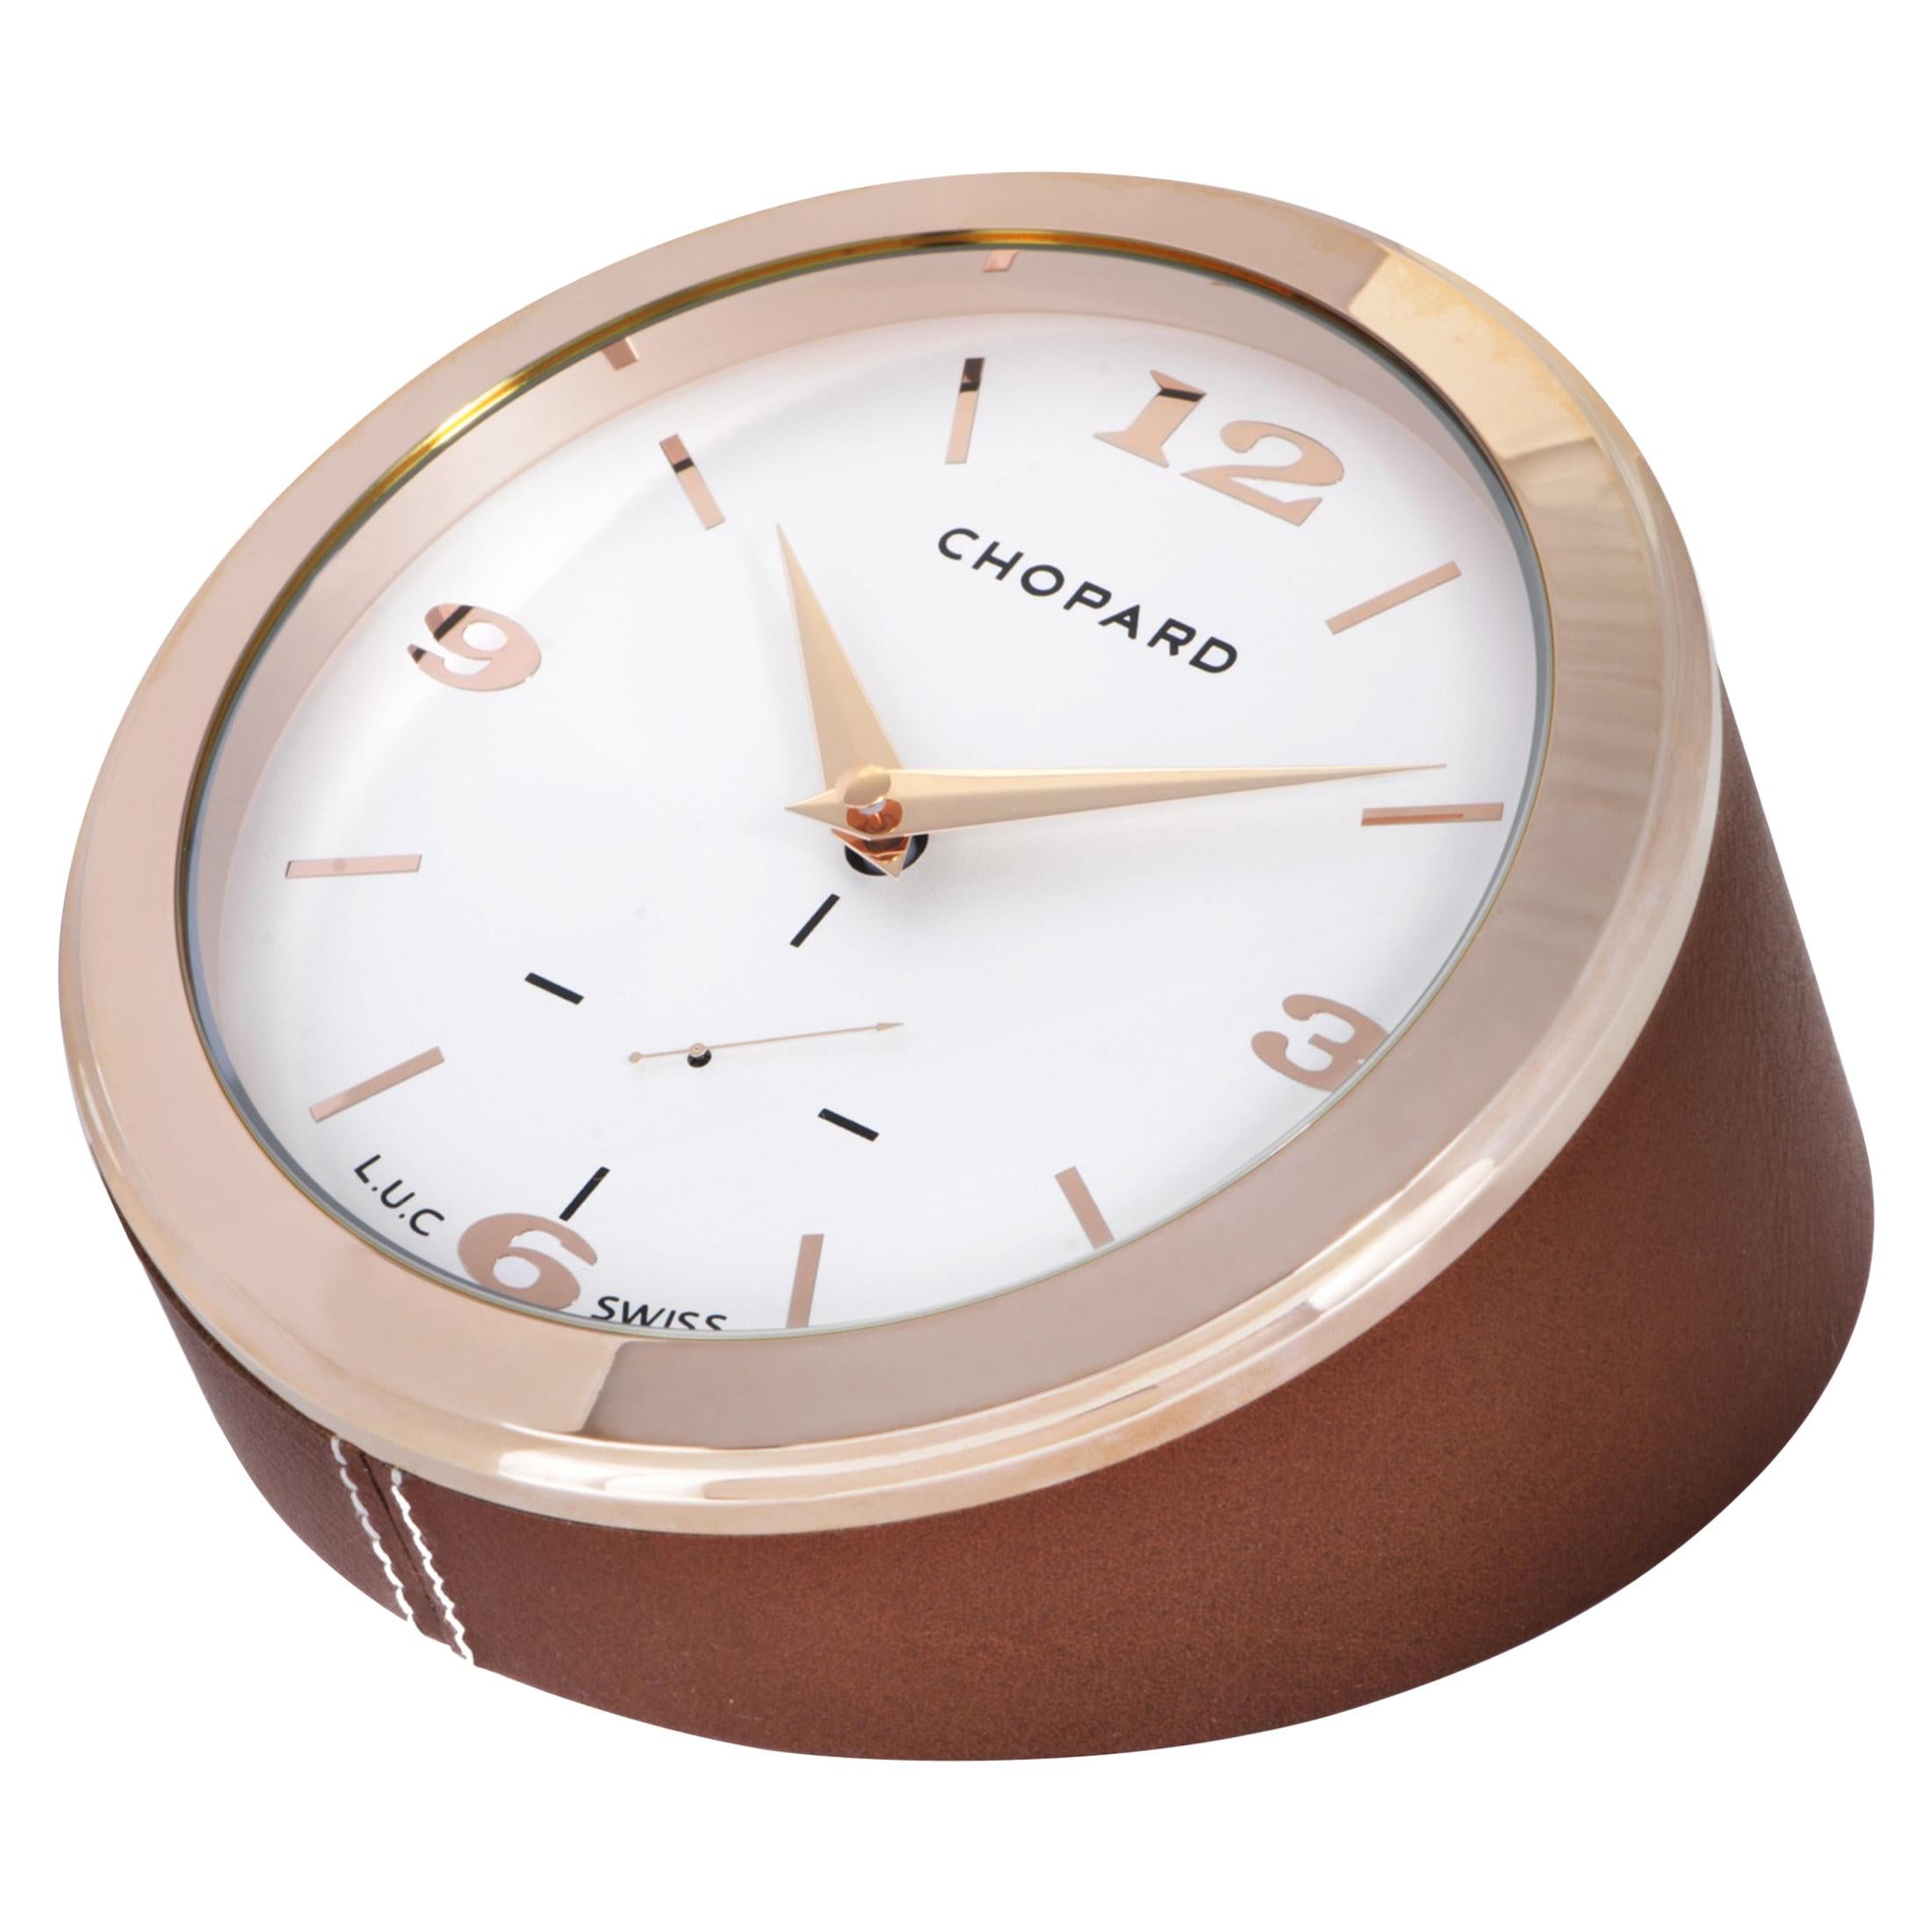 Chopard L.U.C. Table Clock 95020-0072